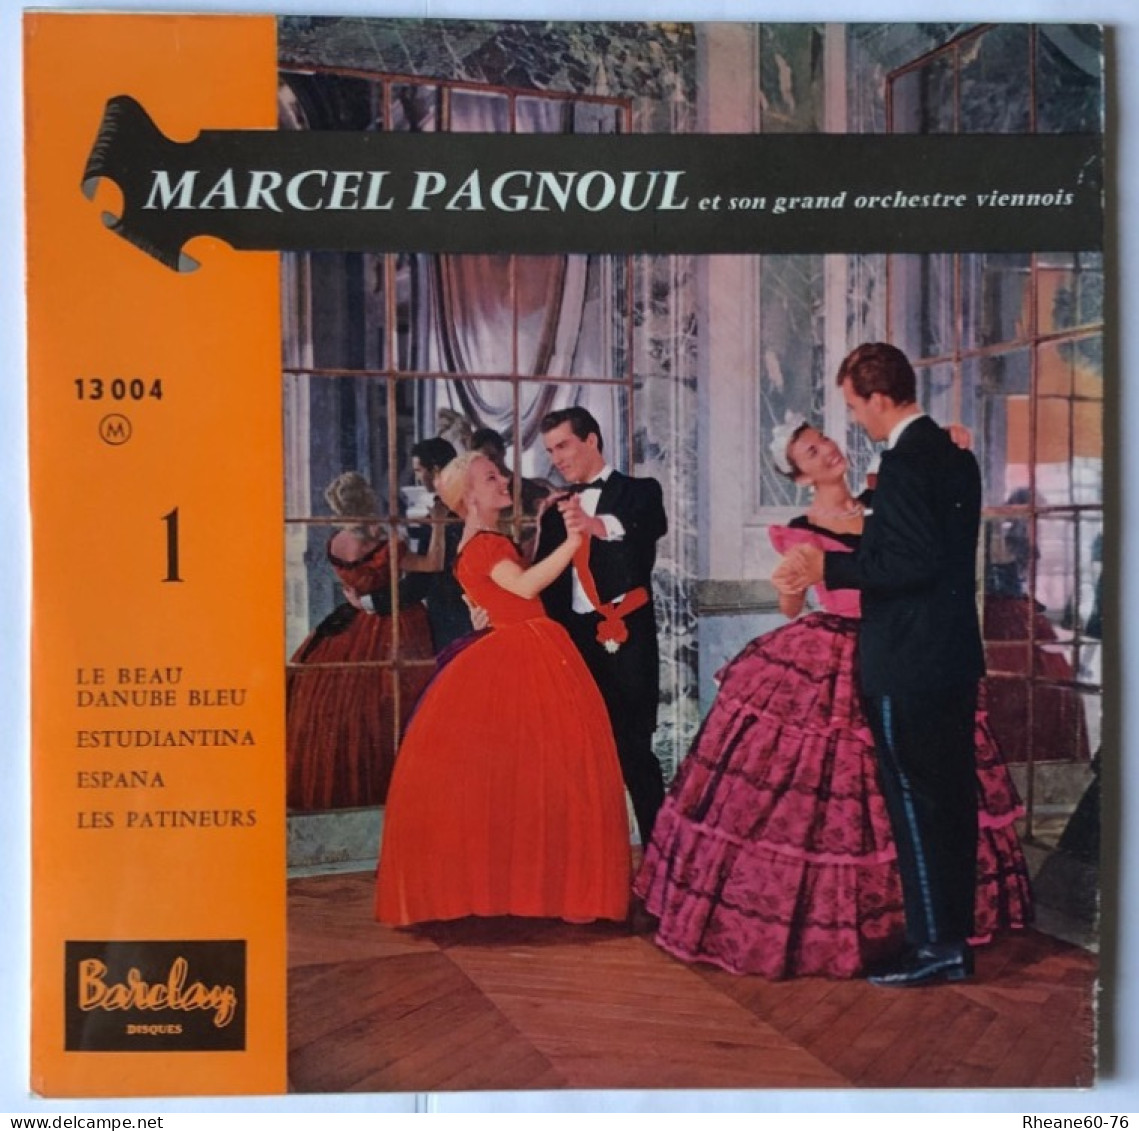 Barclay Disques 13004 Médium 45T EP - Volume 1 - Marcel Pagnoul Et Son Grand Orchestre Viennois - Special Formats